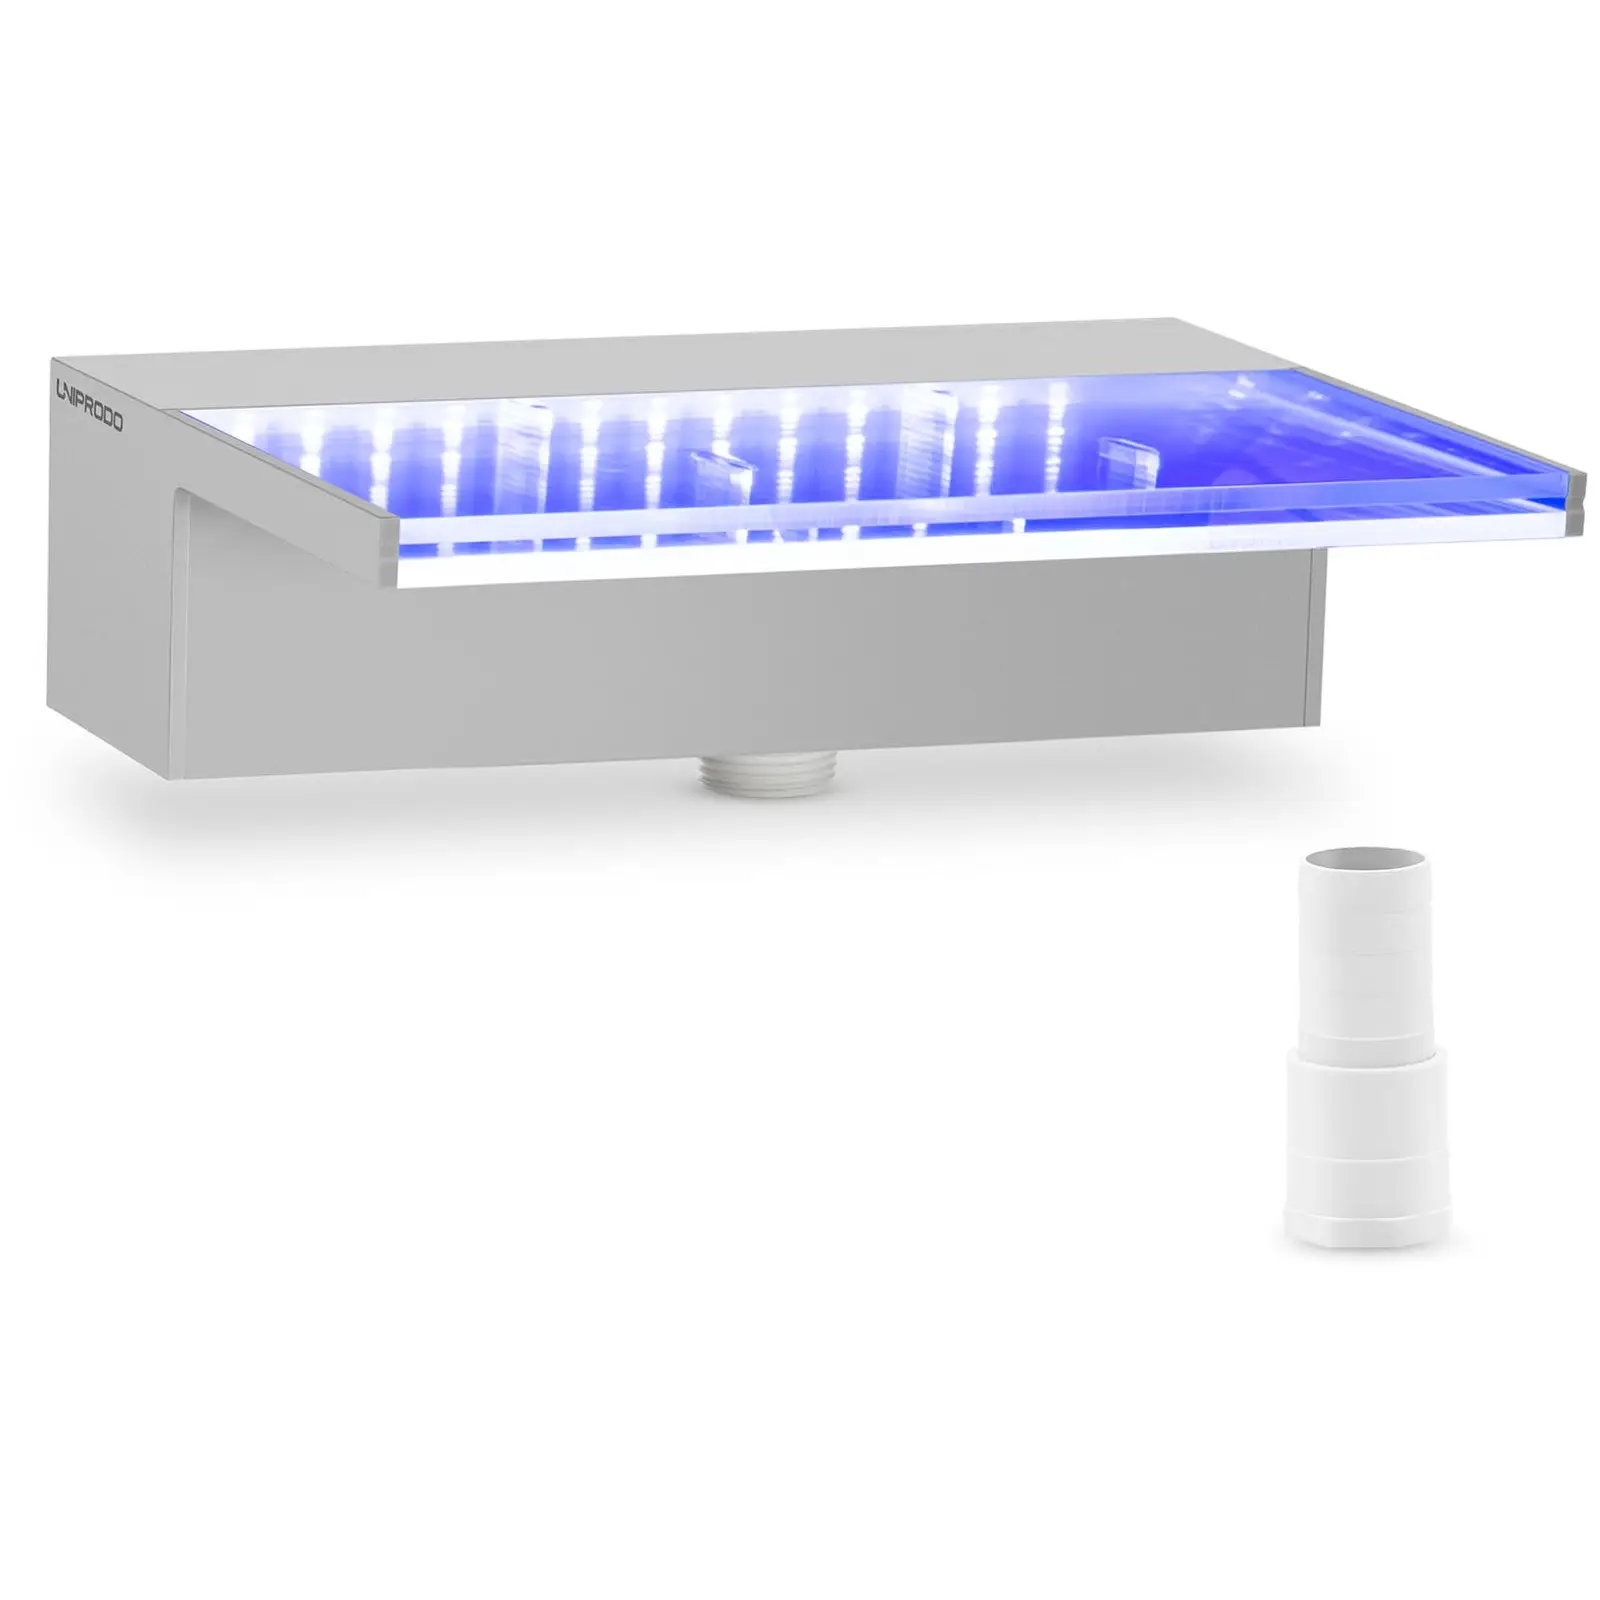 Schwalldusche - 30 cm - LED-Beleuchtung - Blau / Weiß - 135 mm Wasserauslauf